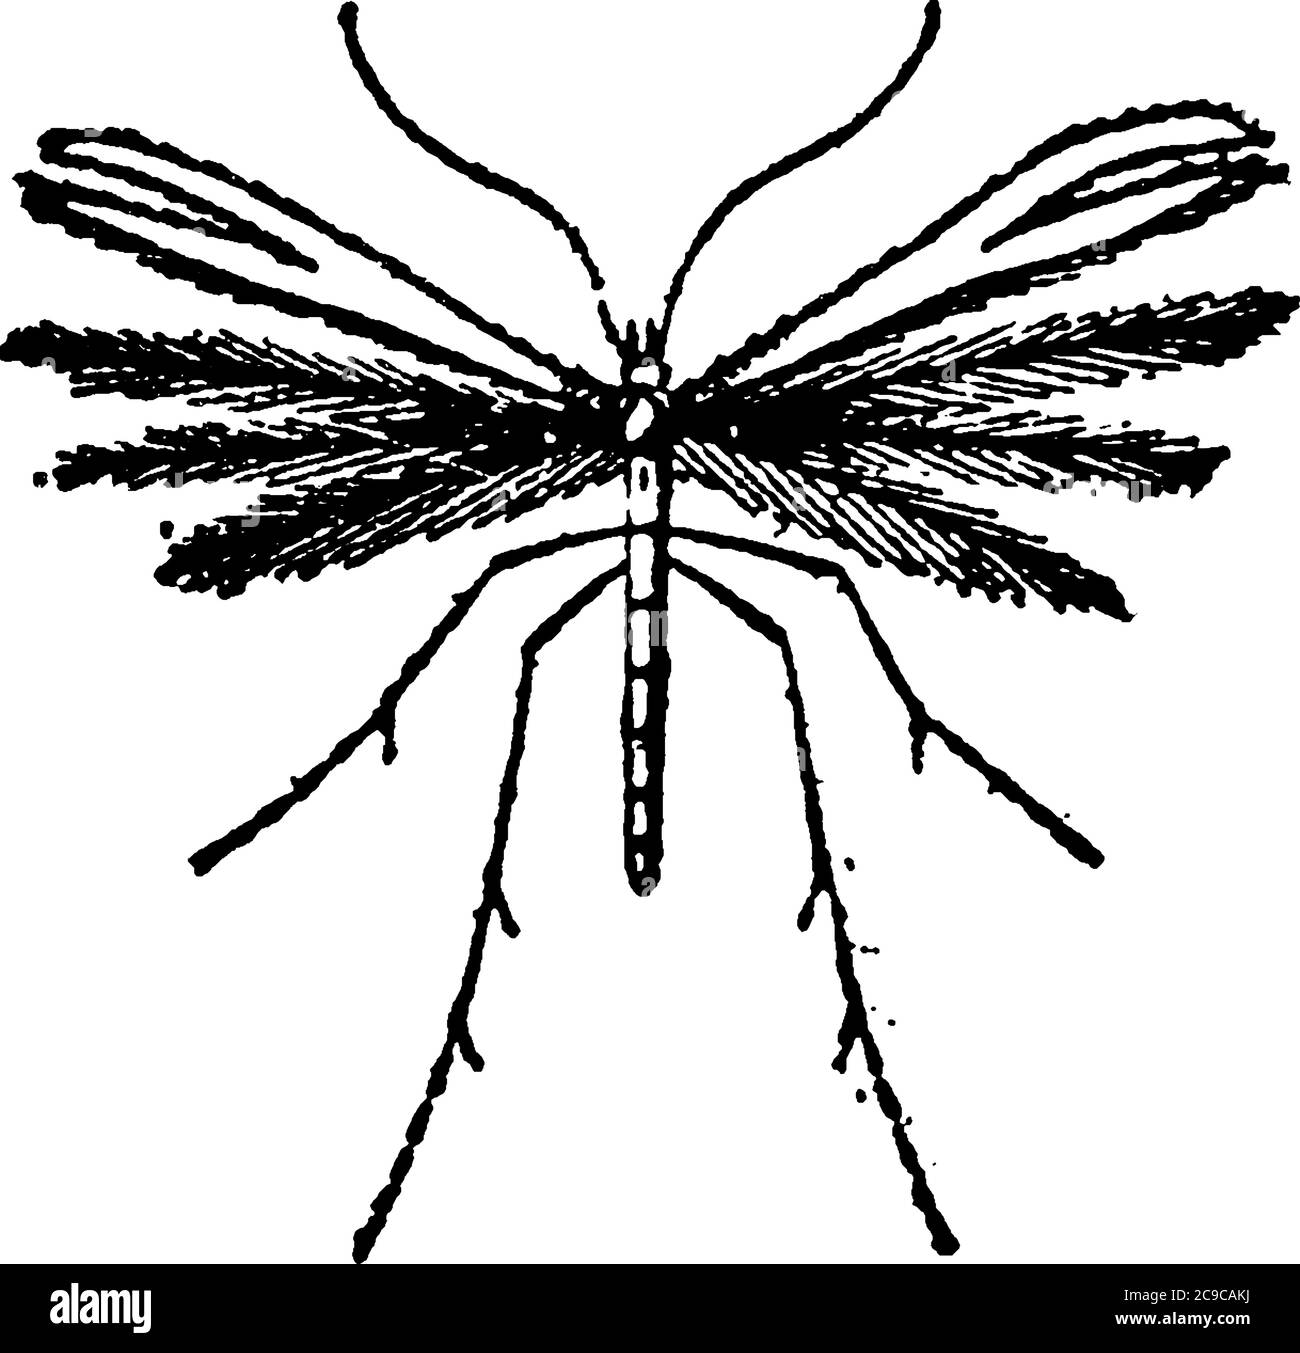 Questo tipo di insetti è notevole dalla peculiare conformazione delle loro ali. Ciascuno degli organi della falda è diviso longitudinalmente in più Illustrazione Vettoriale